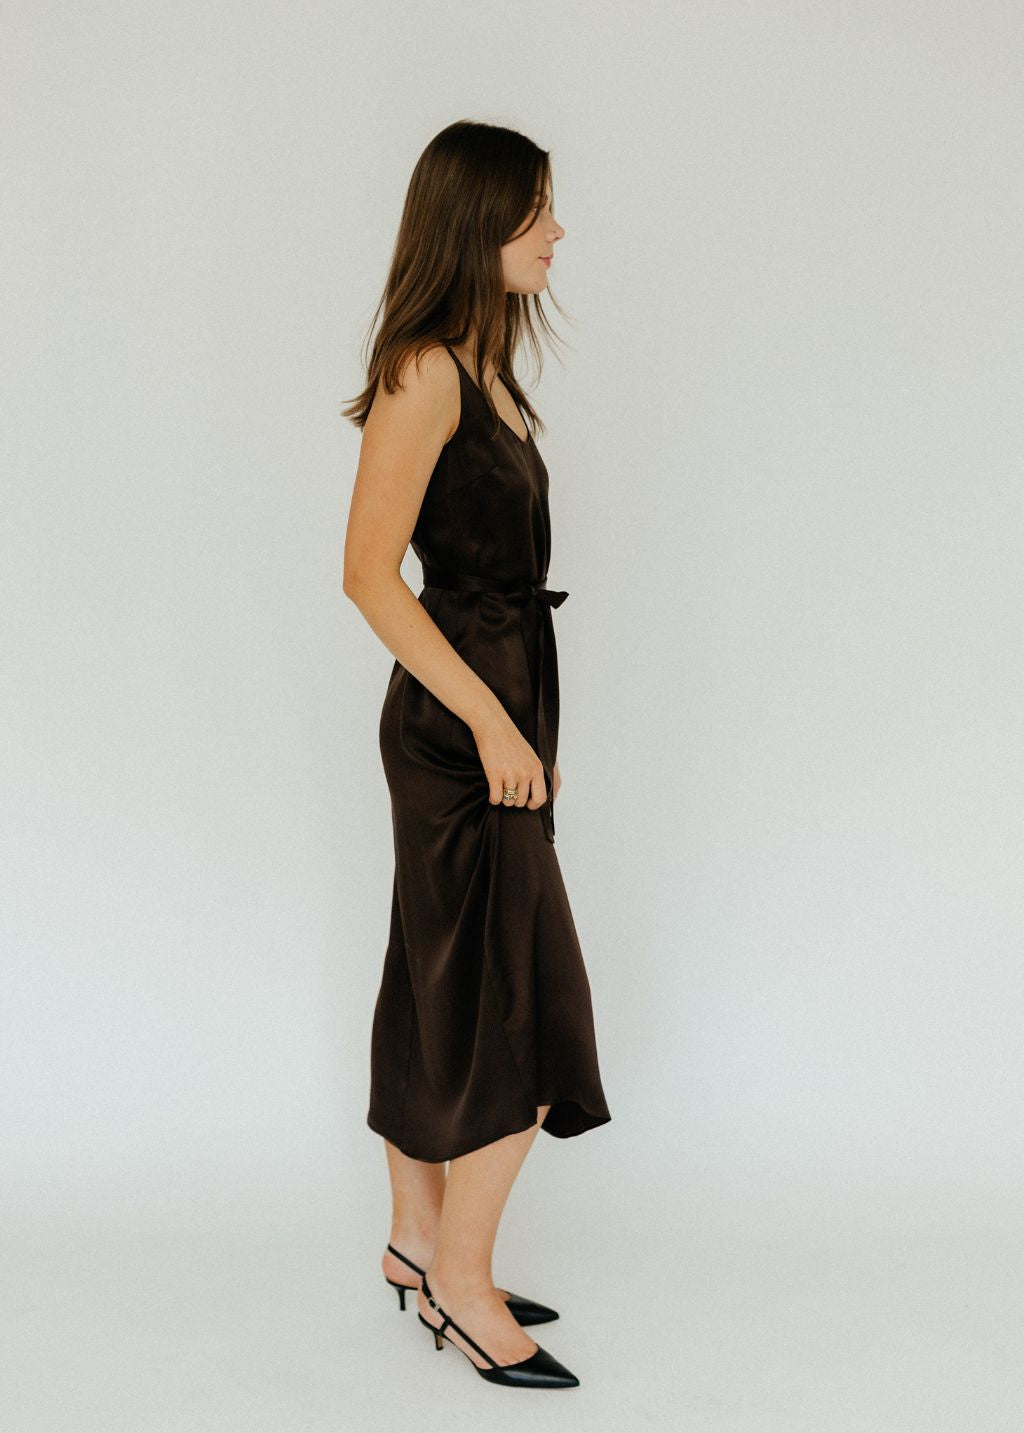 Velvet Manhattan Pant in Black  Tula's Online Boutique – Tula